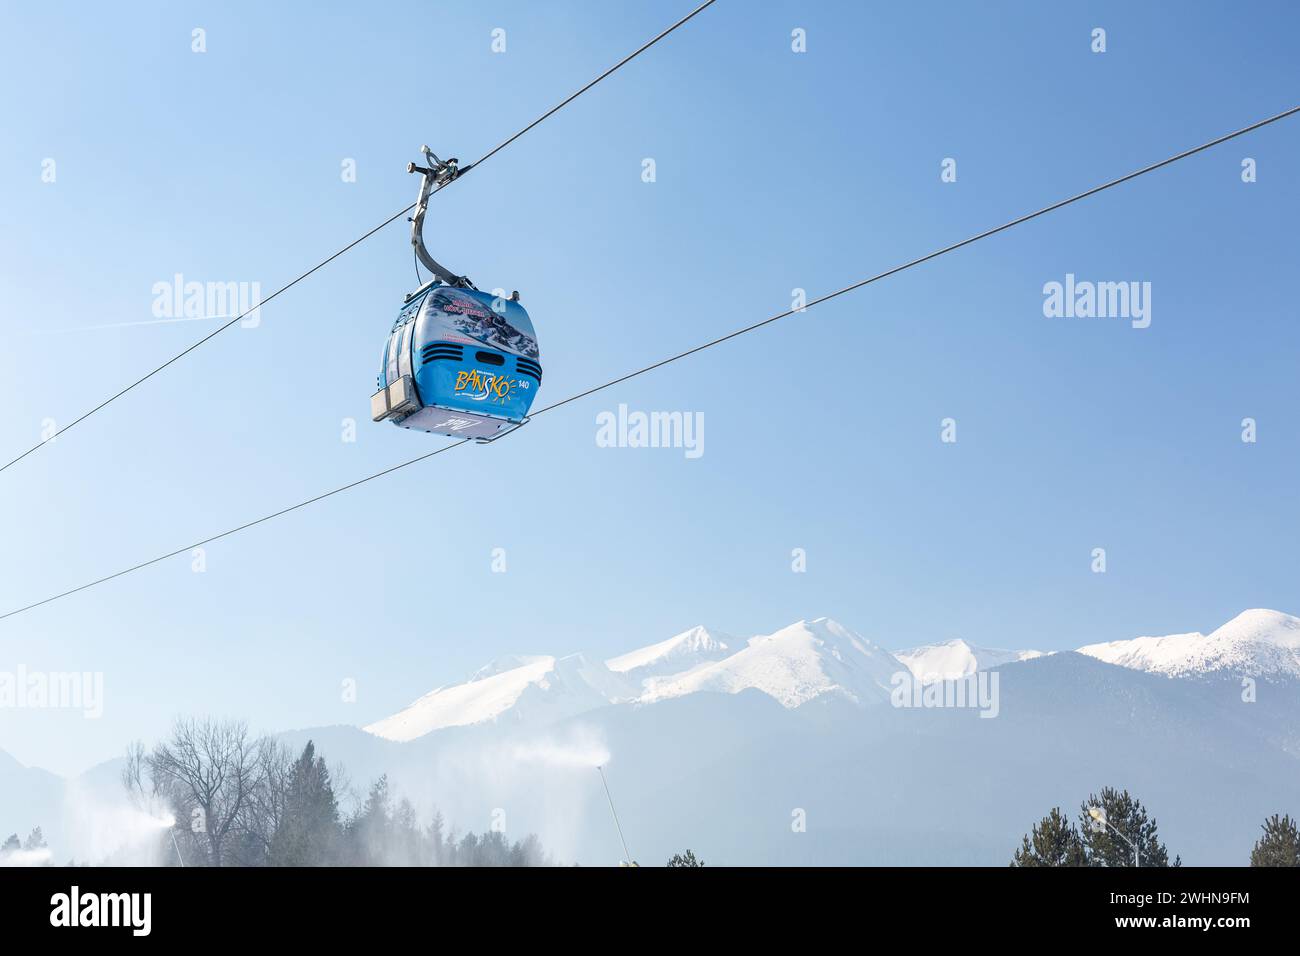 Station de ski Bansko, Bulgarie, téléphérique télécabine Banque D'Images